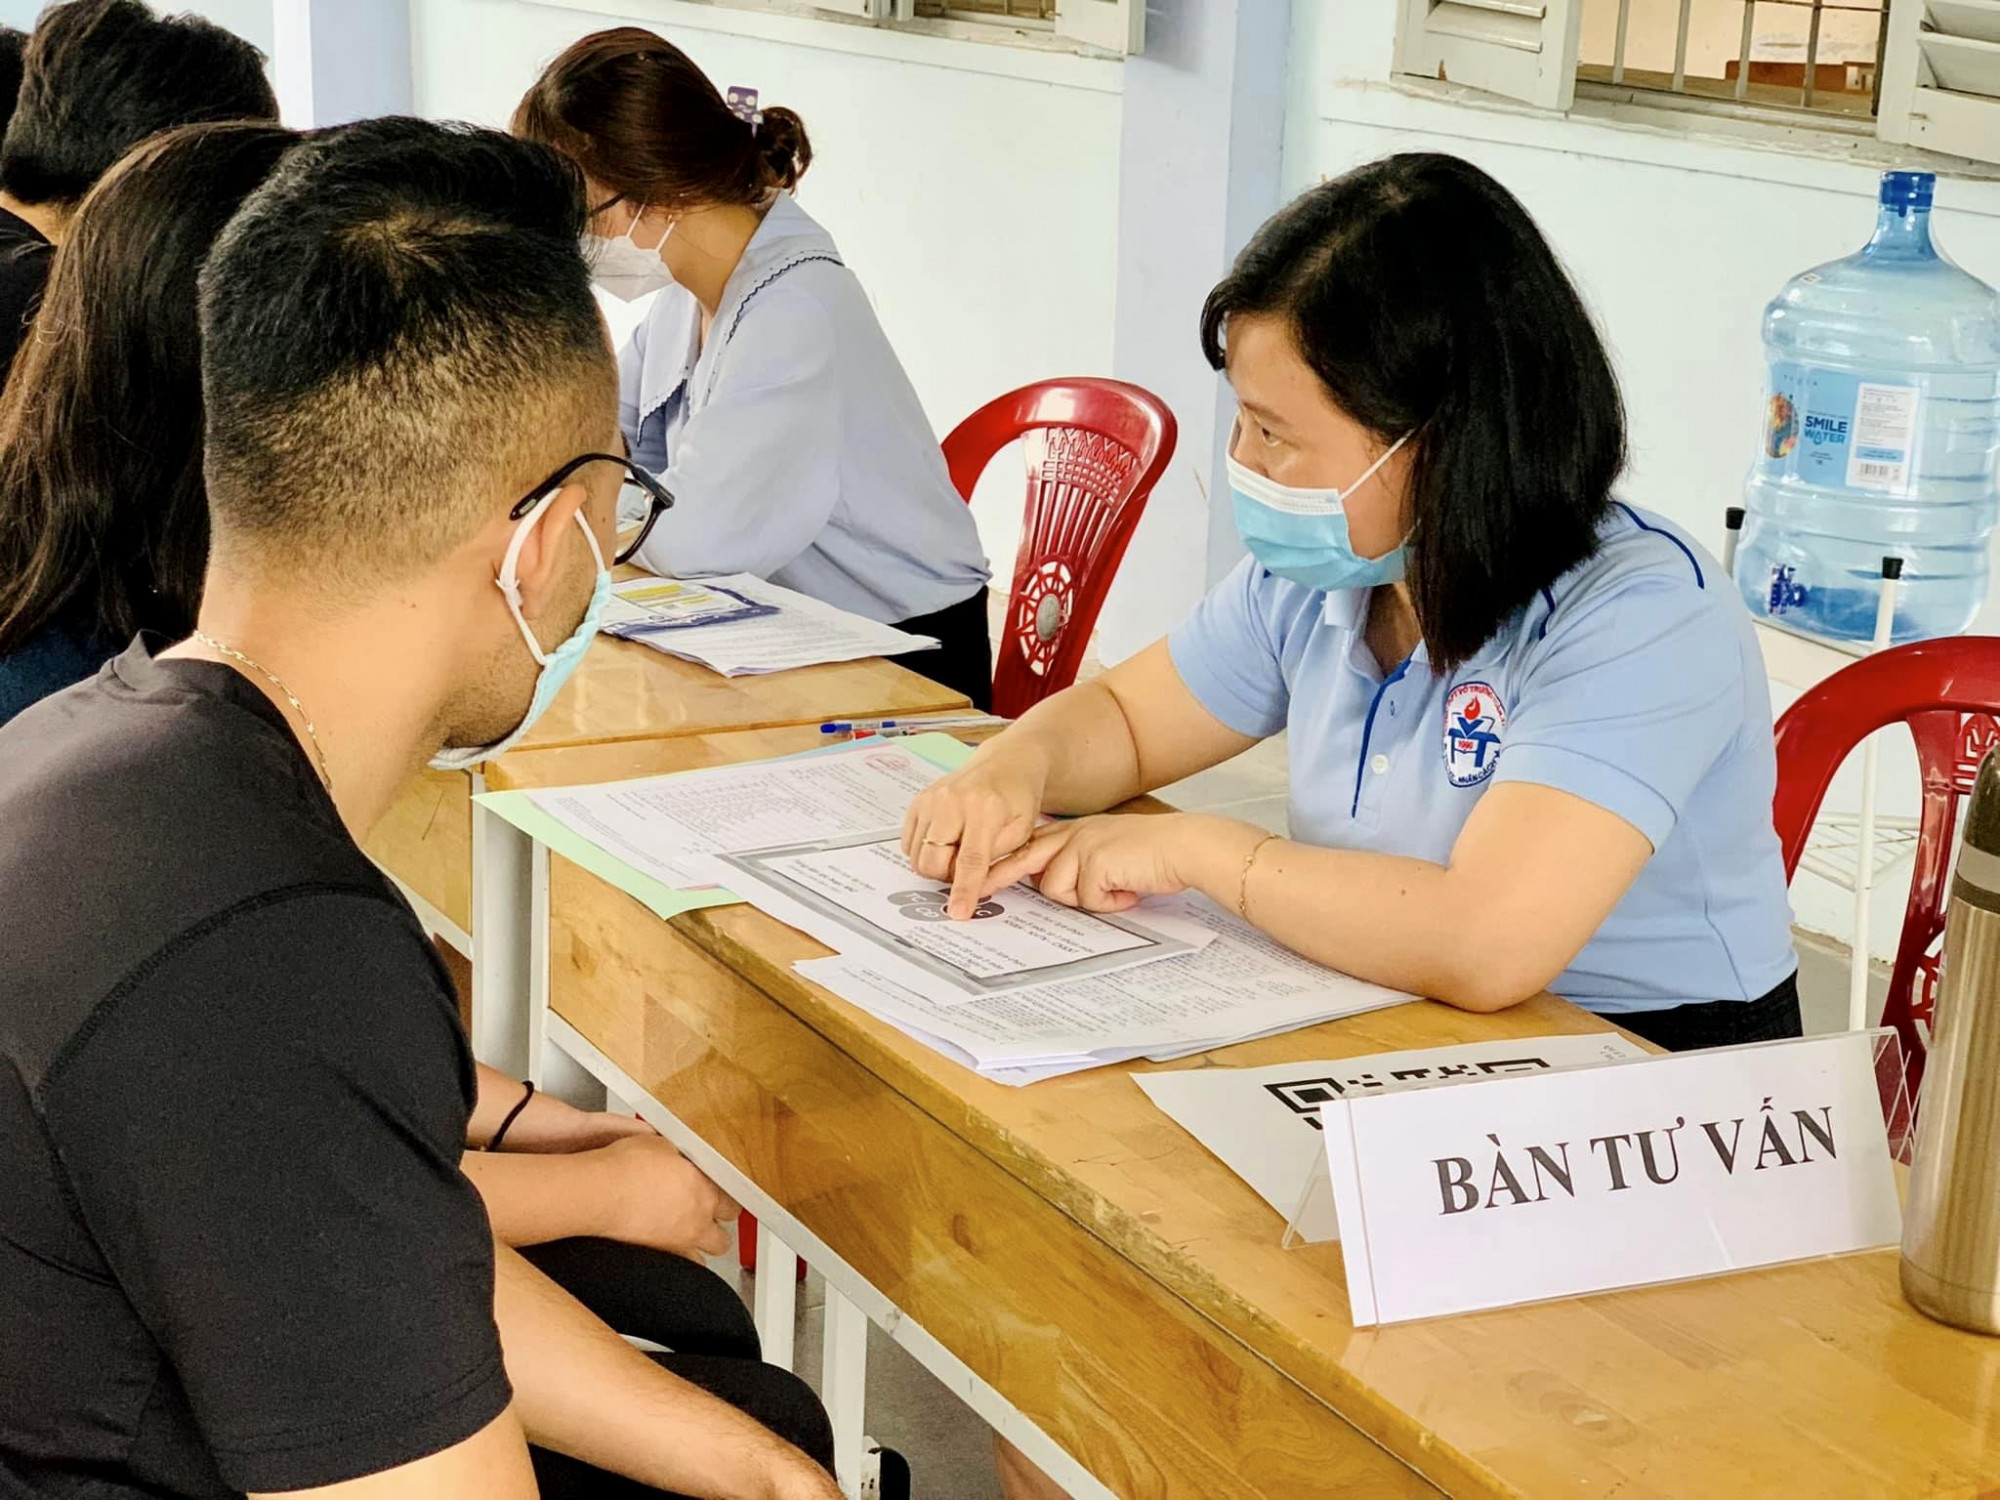 Phó giám đốc Sở GD-ĐT TPHCM Lê Hoài Nam yêu cầu các trường THPT phải cùng vào cuộc tư vấn tuyển sinh cho học sinh lớp 9